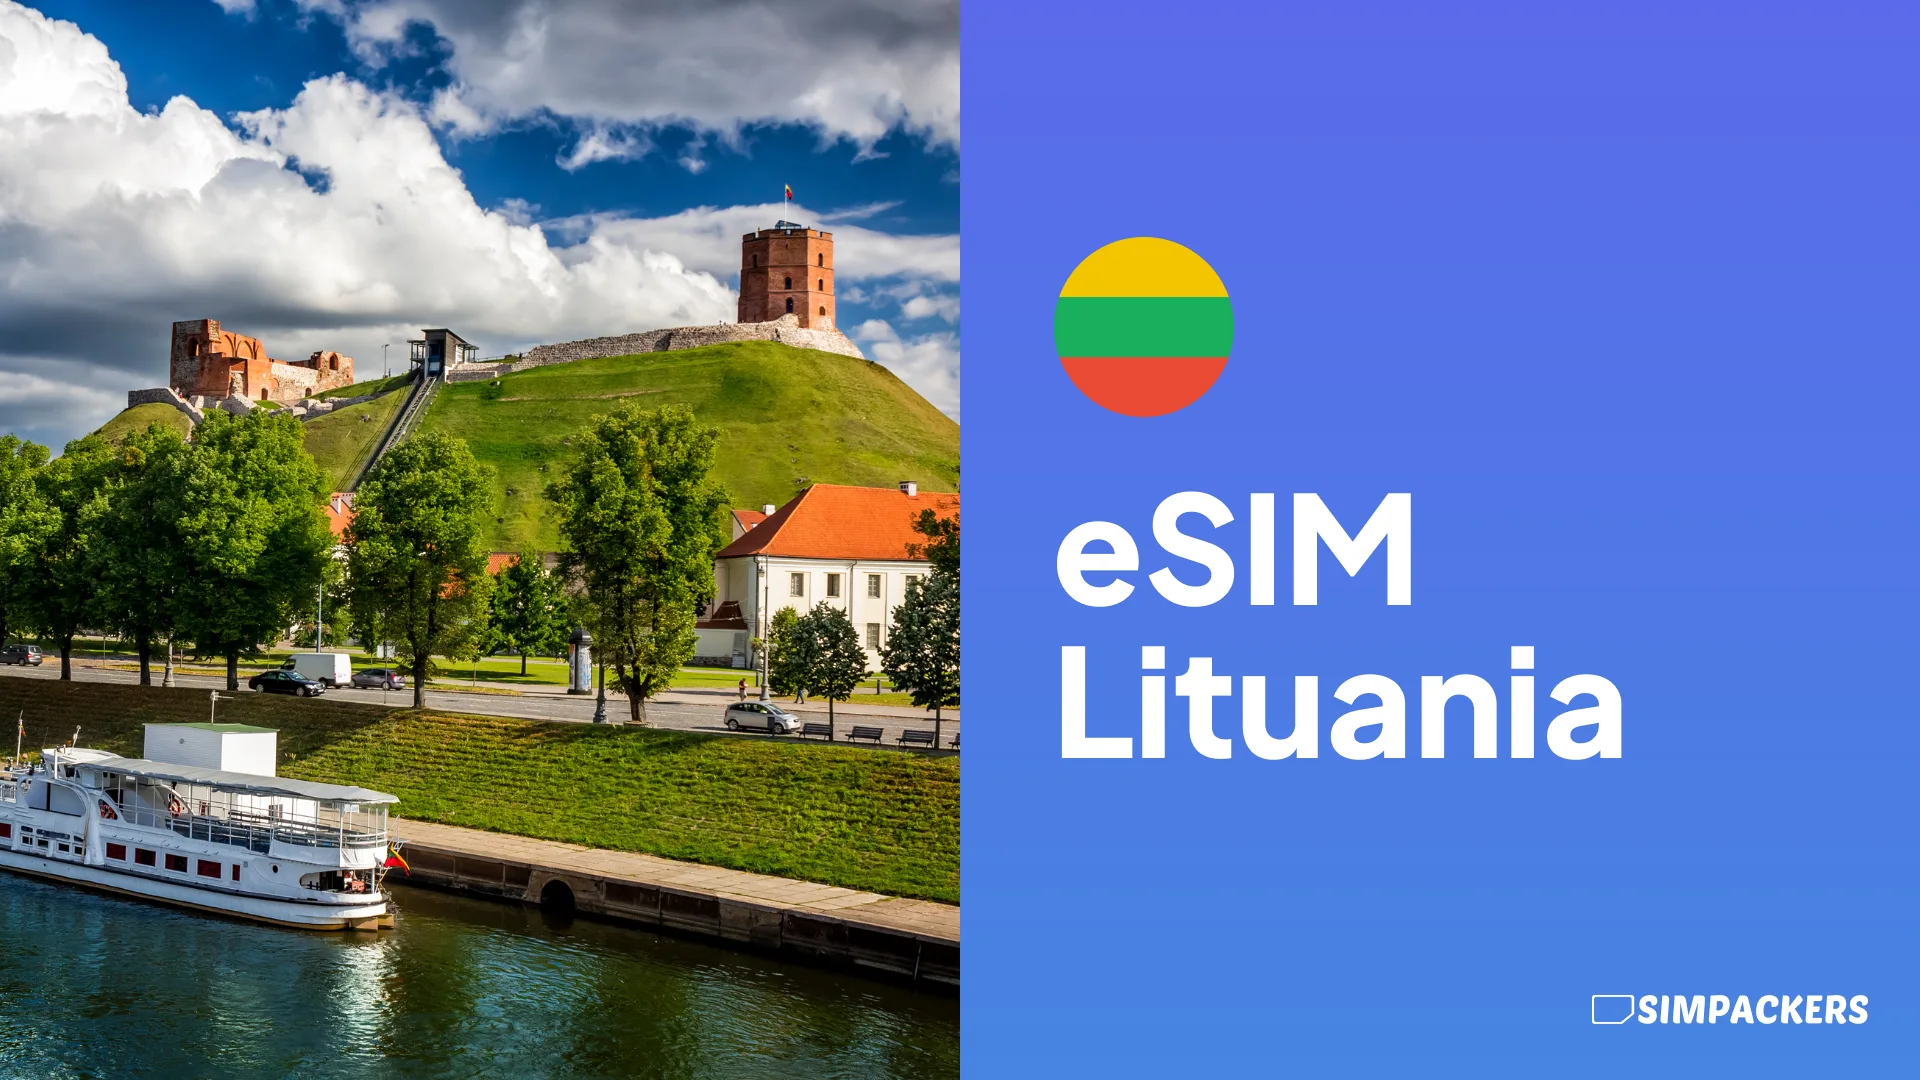 ES/FEATURED_IMAGES/esim-lituania.webp